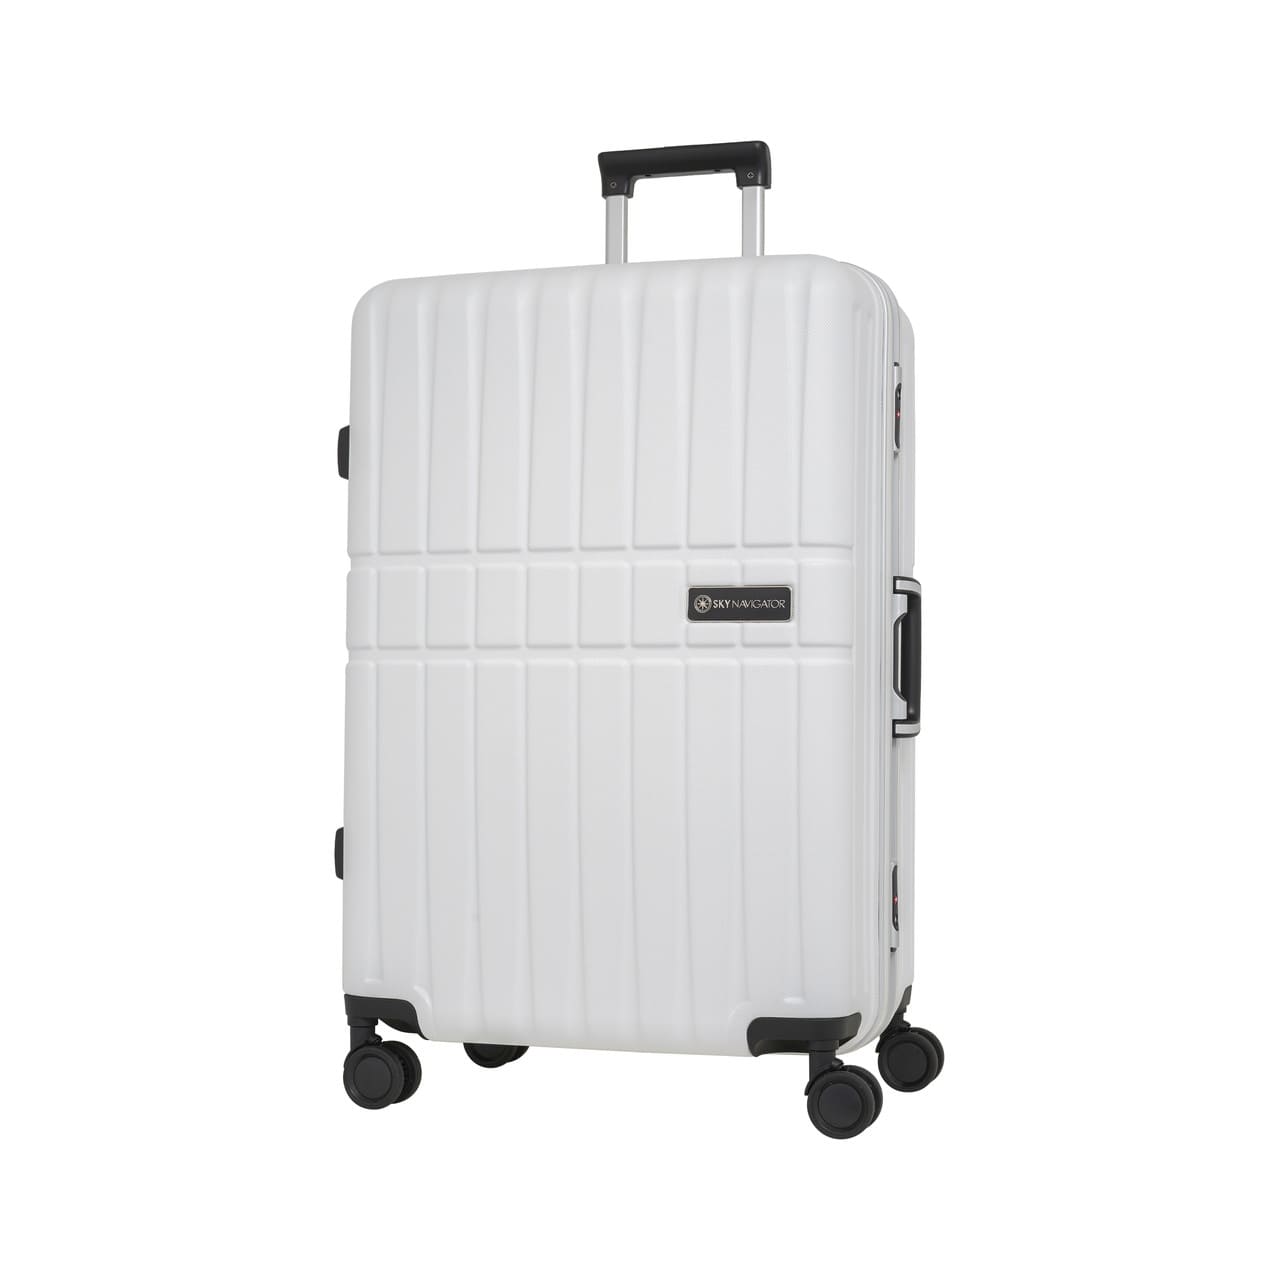 スーツケース Lサイズ 7泊以上 1週間以上 キャリーケース 静音 軽量 大容量 フレーム 旅行 ビジネス トラベル スカイナビゲーター ランキング1位